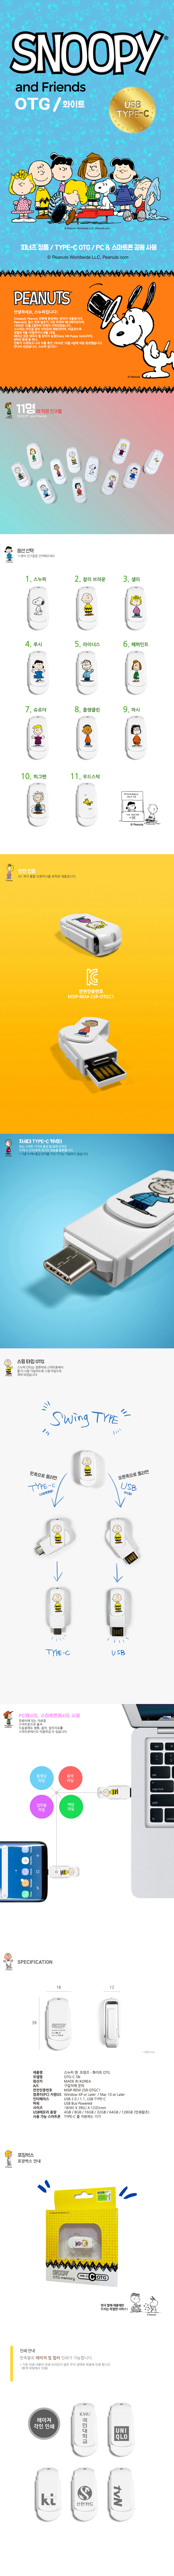 스누피 USB-C OTG 16G C-SN 11,500원 - 캠브리트 디지털, PC저장장치, USB, 캐릭터/디자인 바보사랑 스누피 USB-C OTG 16G C-SN 11,500원 - 캠브리트 디지털, PC저장장치, USB, 캐릭터/디자인 바보사랑